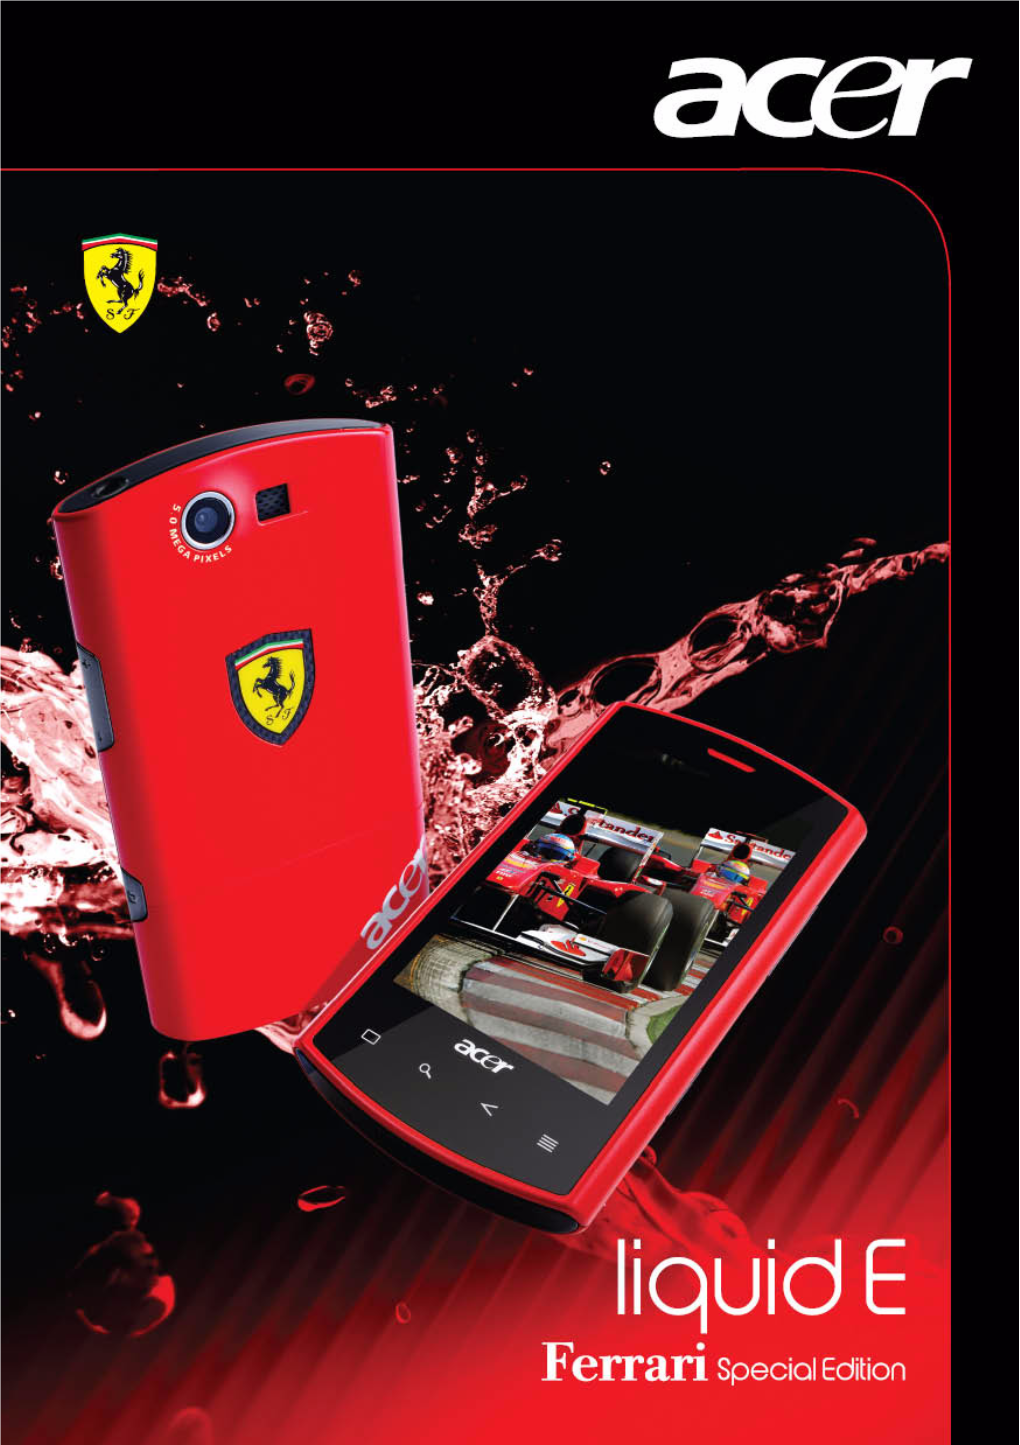 Bedienungsanleitung Acer Liquid E Ferrari Special Edition